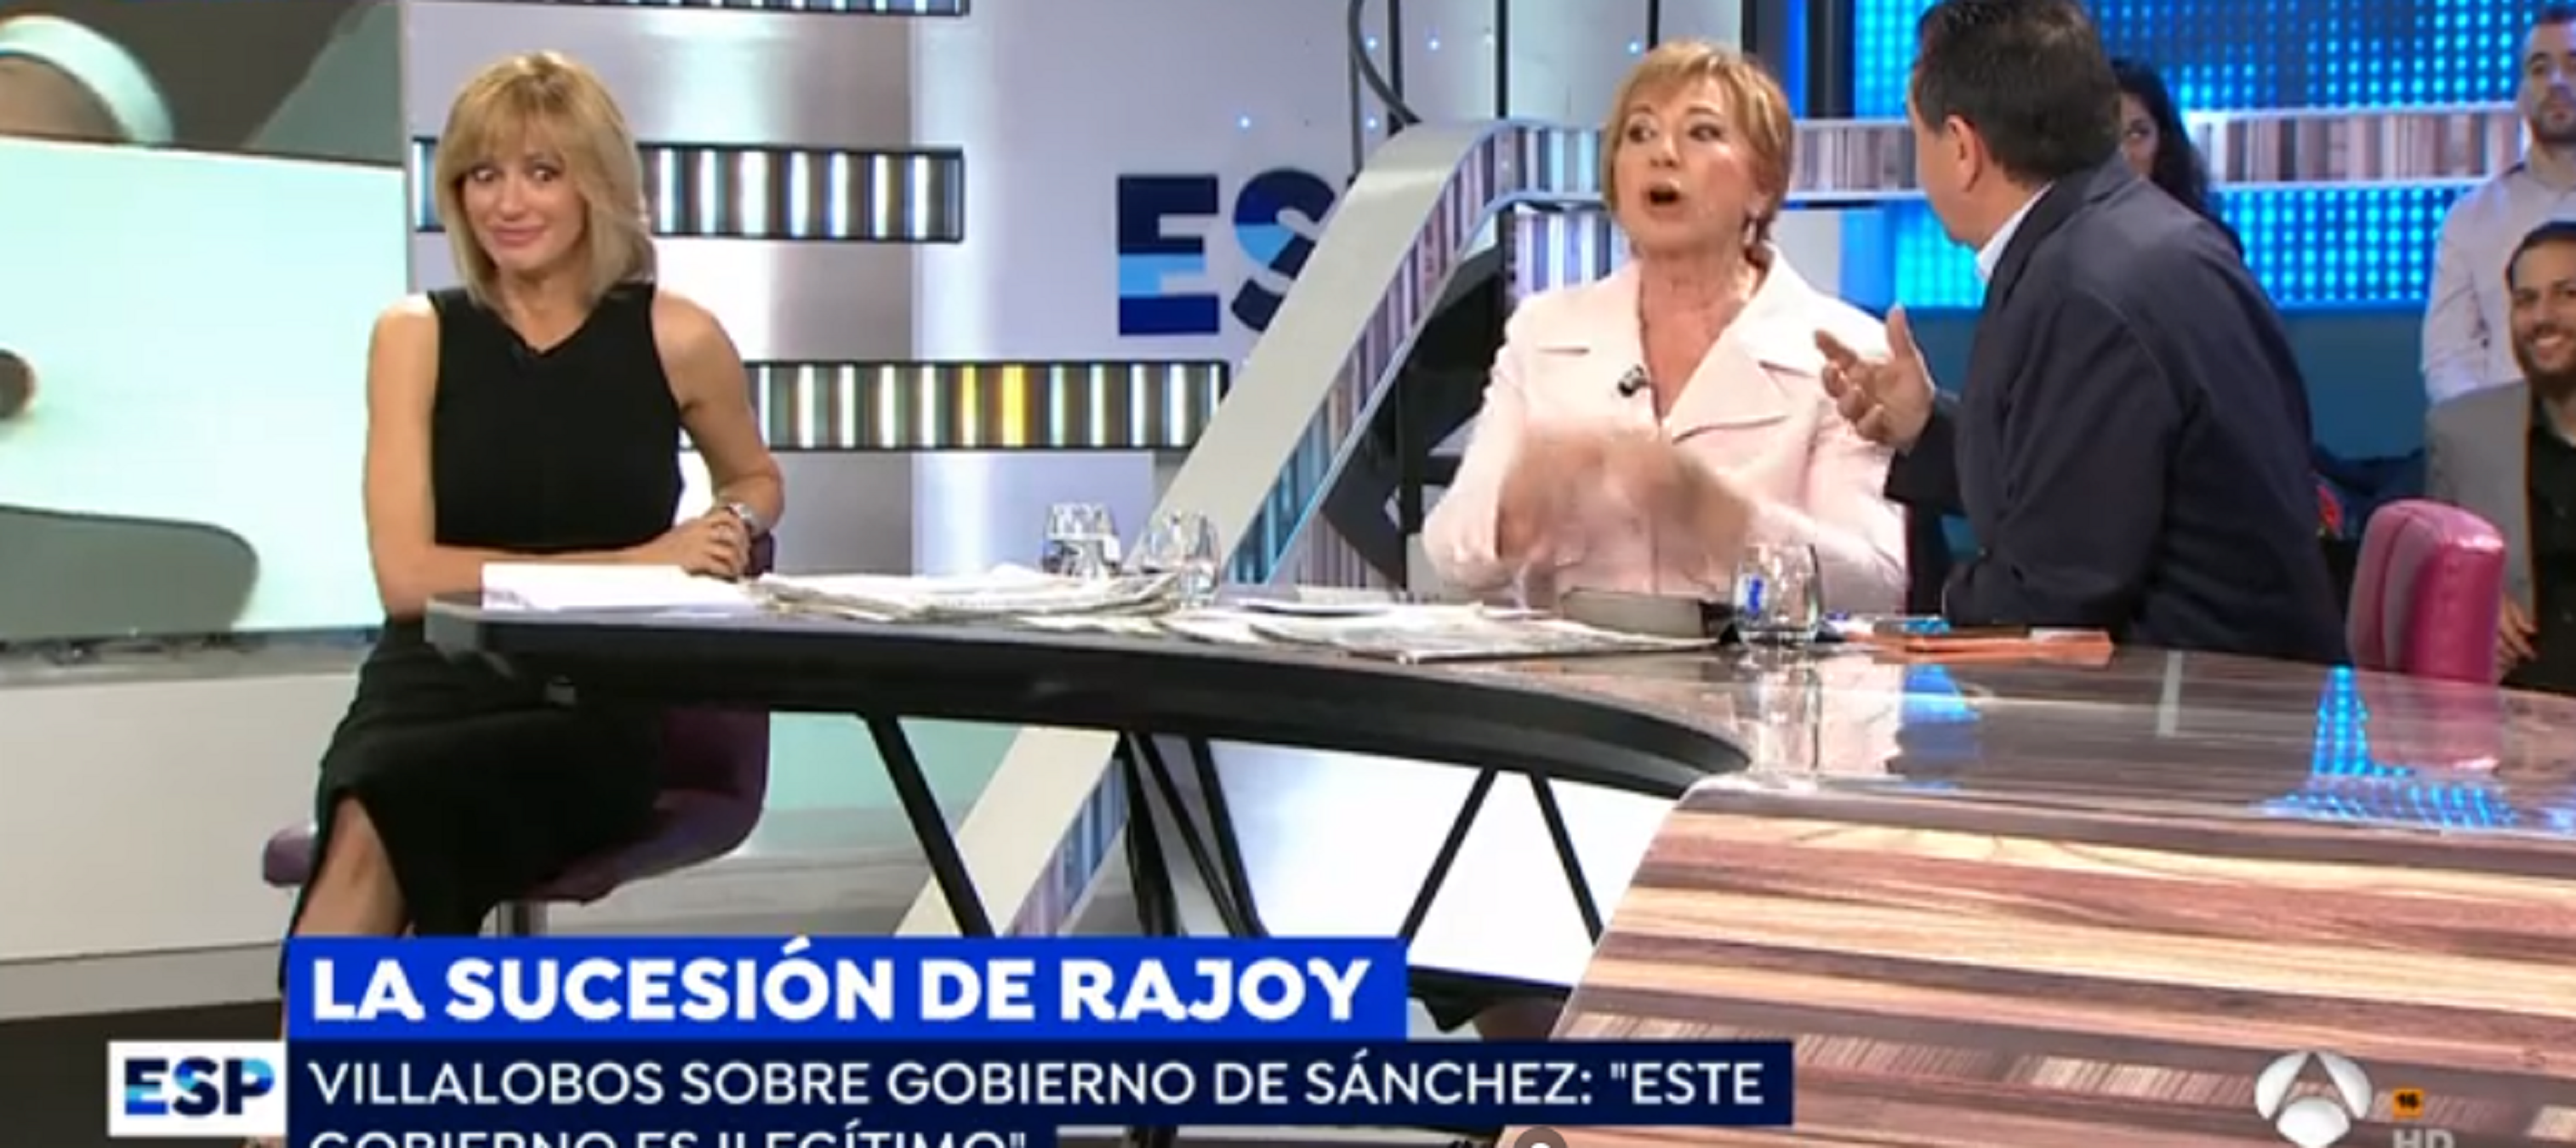 Celia Villalobos no digiere el cambio de gobierno y se pone a gritar en Antena 3